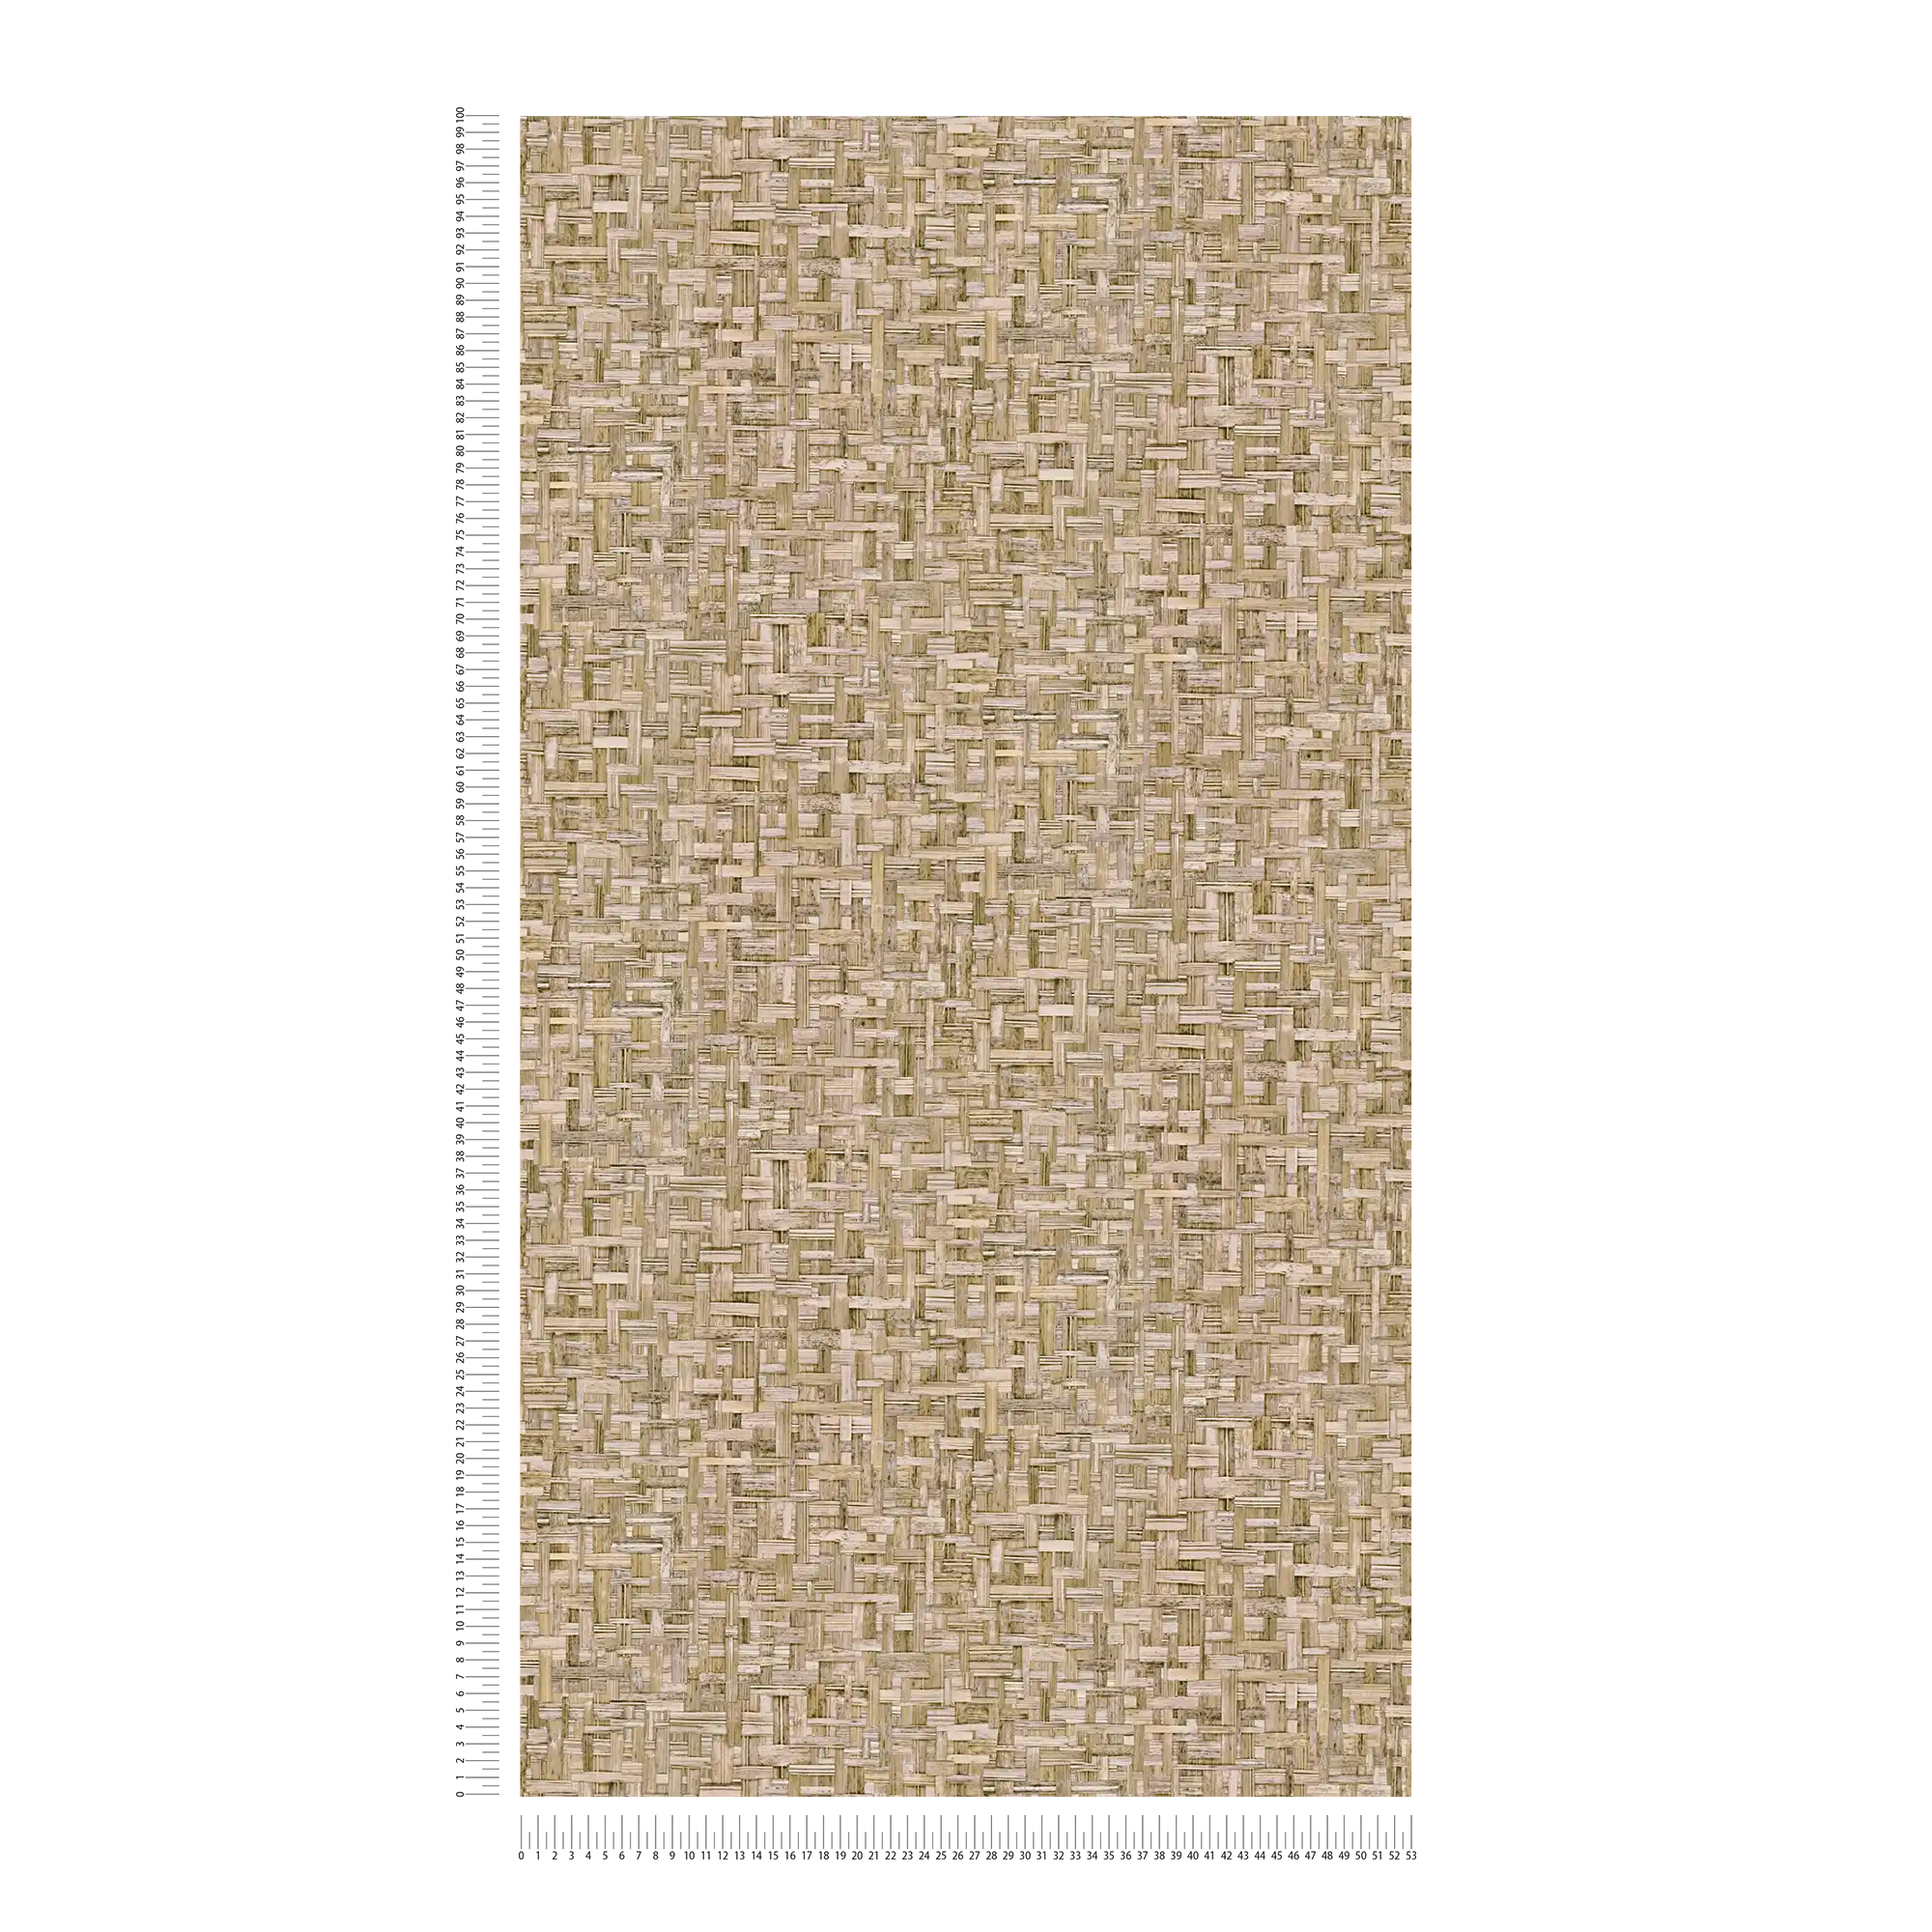             papel pintado marrón claro con aspecto de madera con patrón de fibra - marrón, beige
        